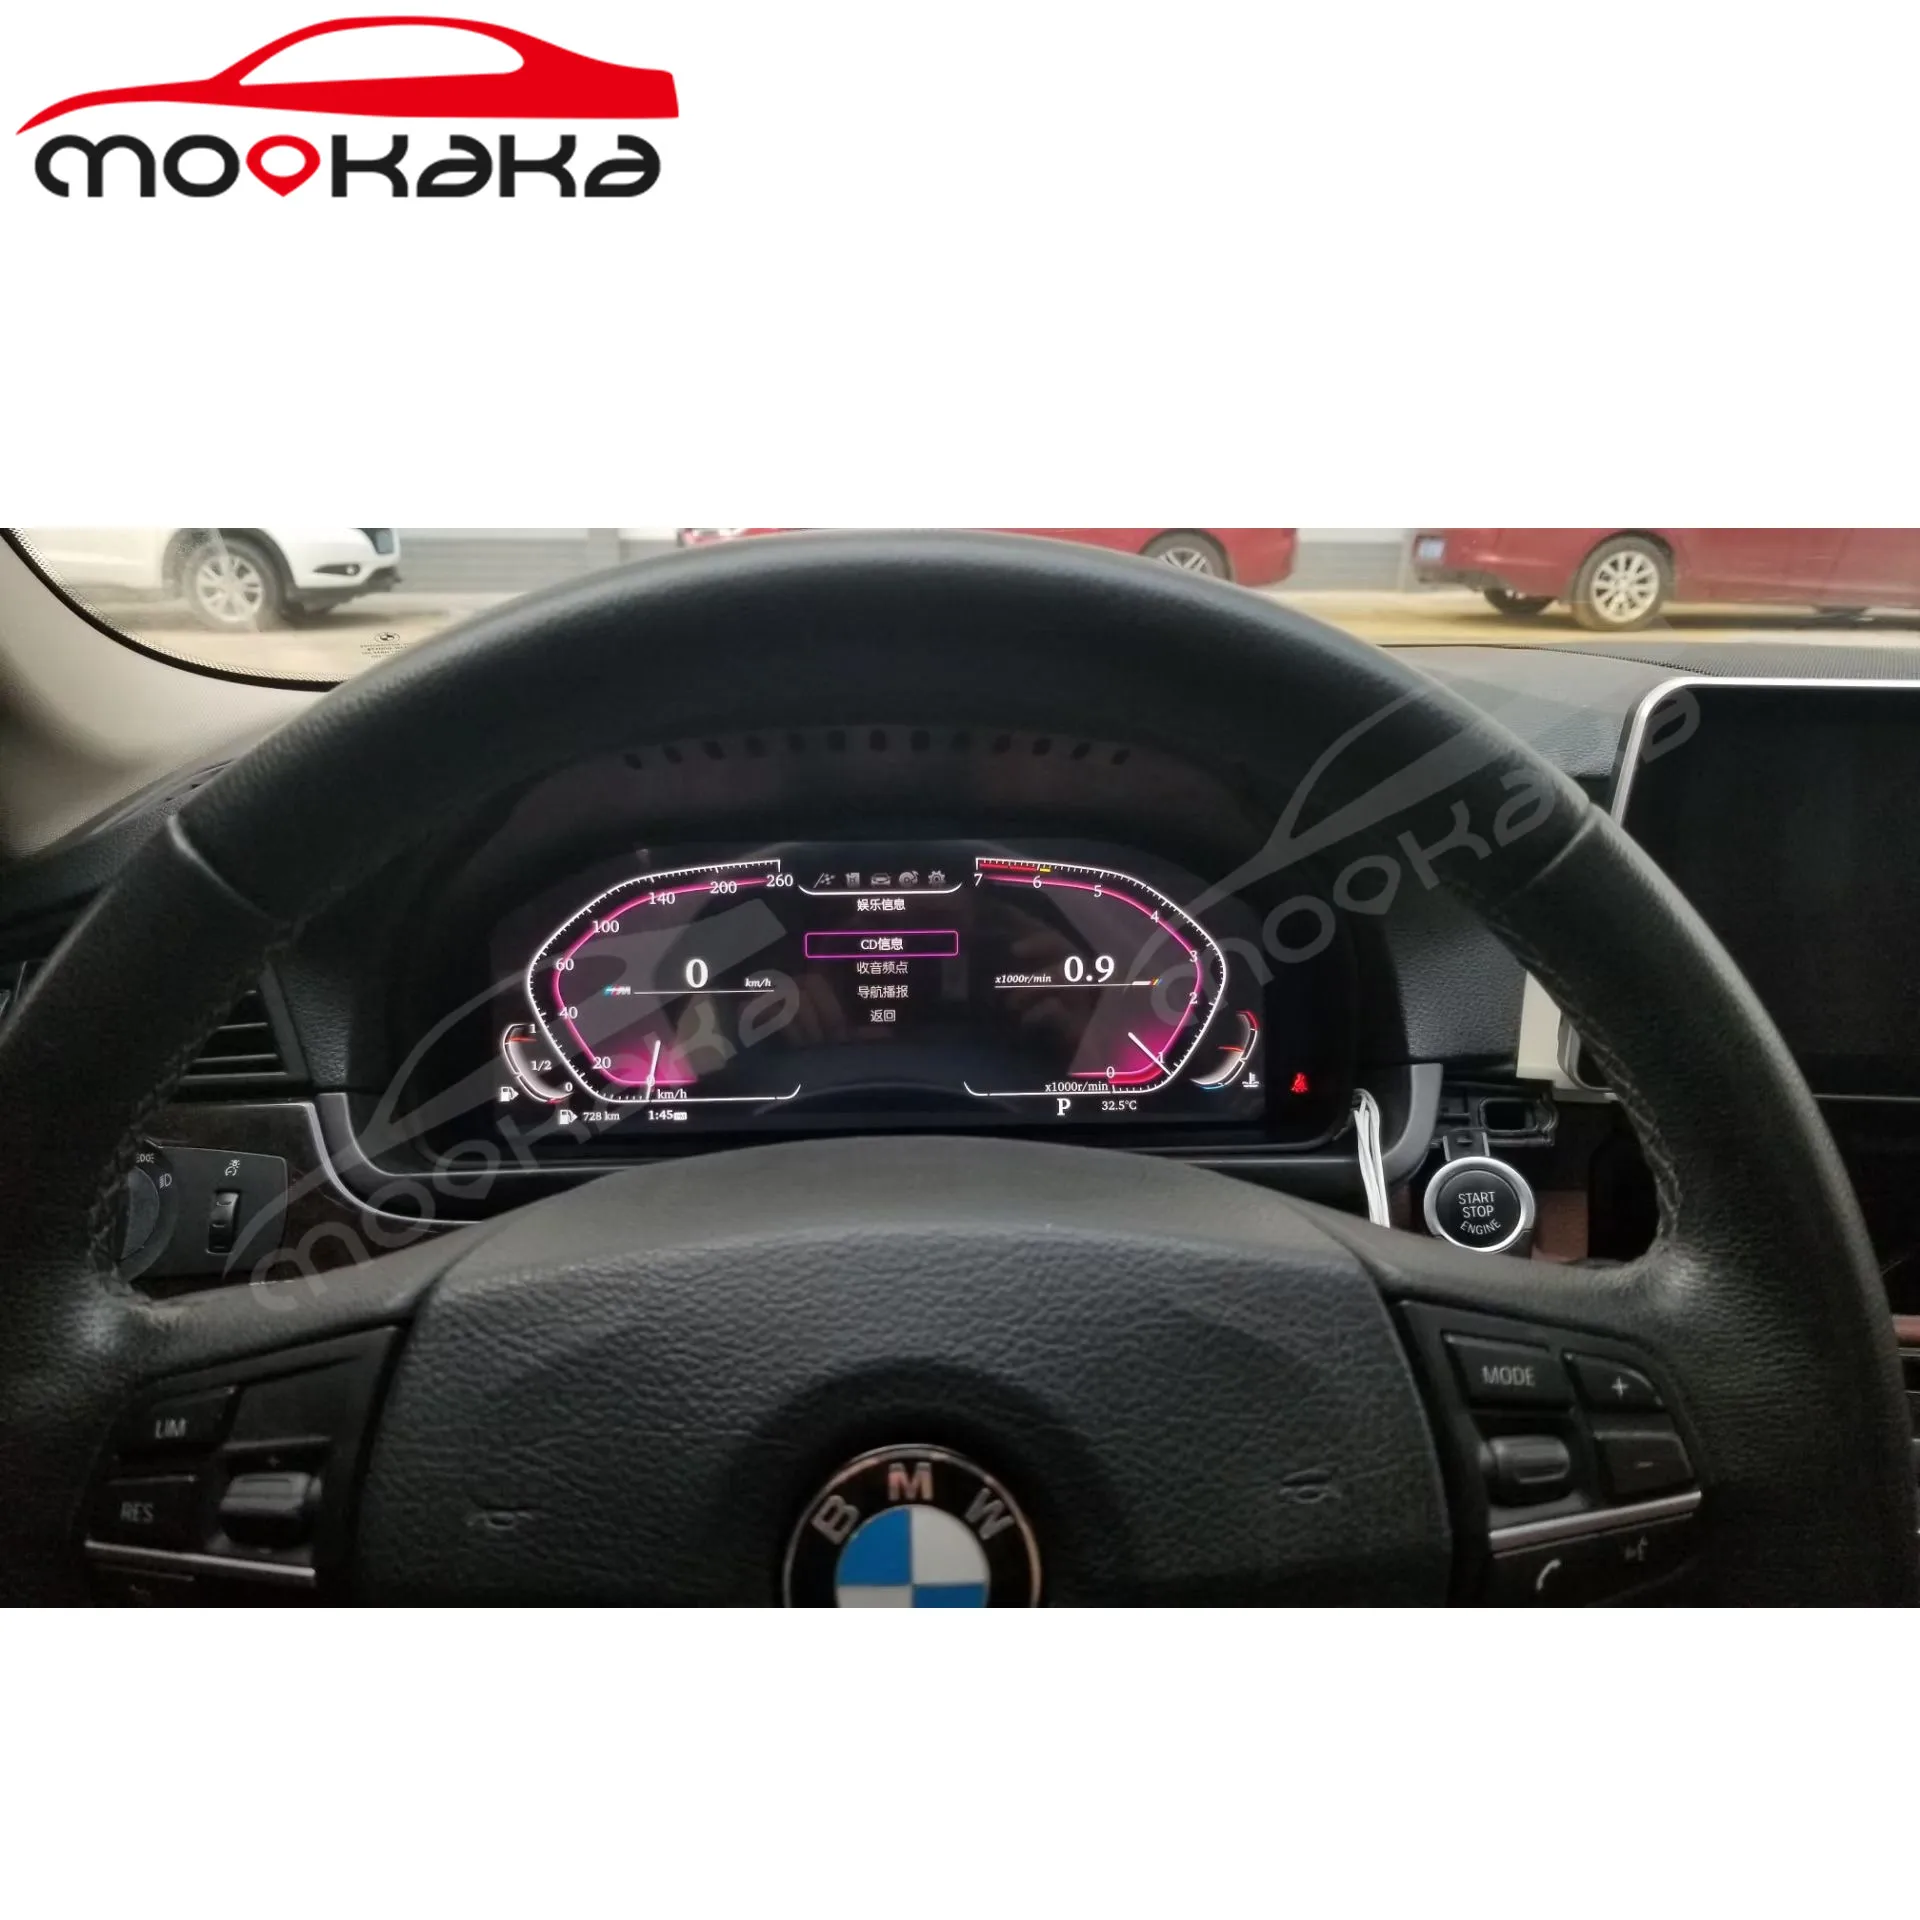 Panel de instrumentos LCD para coche, pantalla Digital para BMW Serie 5/6/7, F06, F07, F10, F11, F12, F18, X5, X6, F15, F16, medidor de velocidad